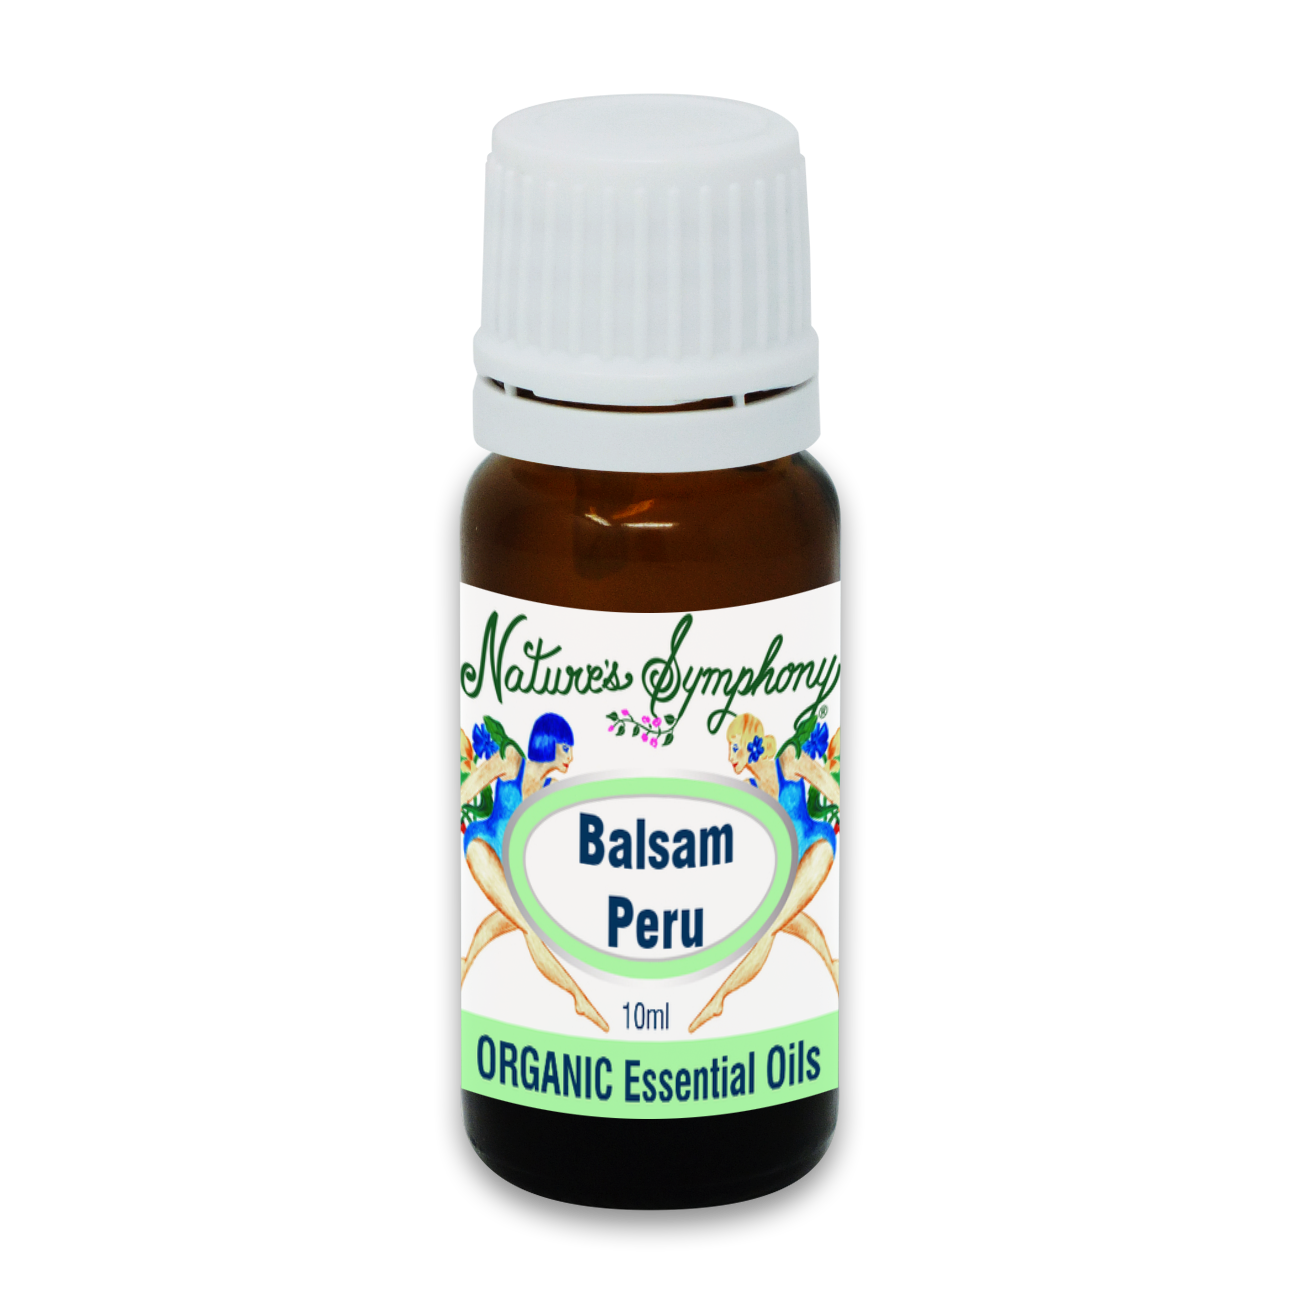 Balsam Peru, Organic/Wildcrafted oil - 10ml